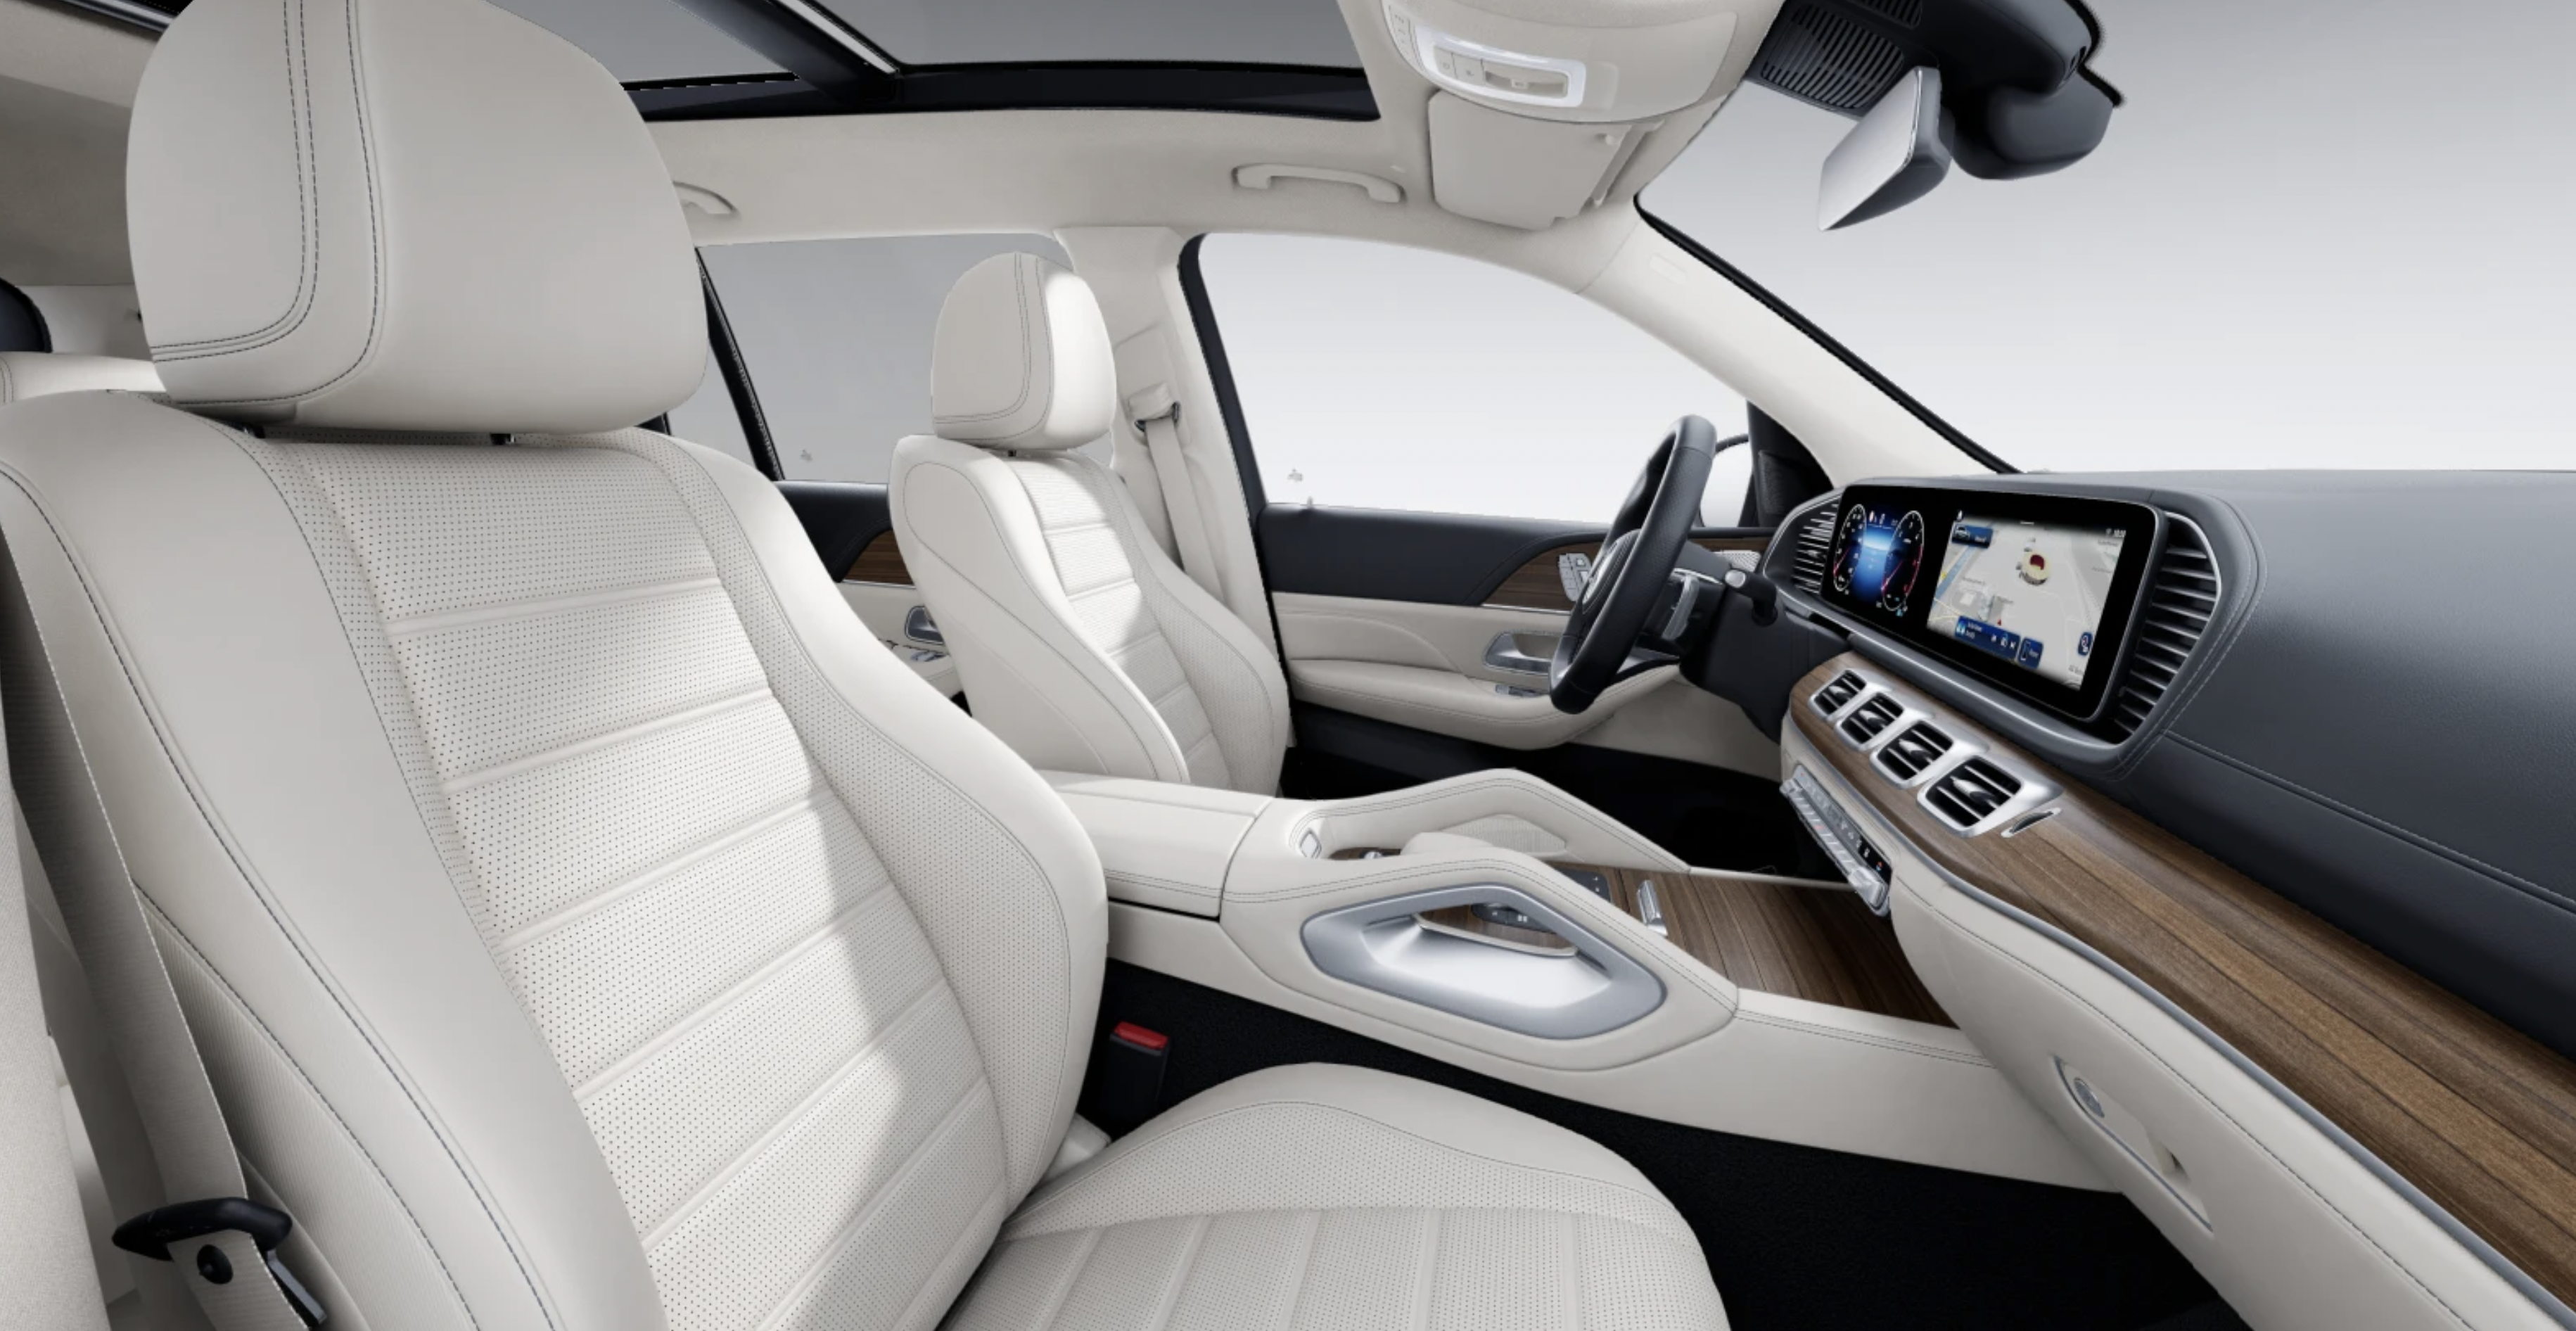 Mercedes GLS 450d 4matic AMG | nový facelift | nové auto skladem | nejmodernější velké naftové SUV | luxusní béžový interiér | nafta 387 koní | maximální výbava | ihned k předání | nákup online | auto eshop | AUTOiBUY.com